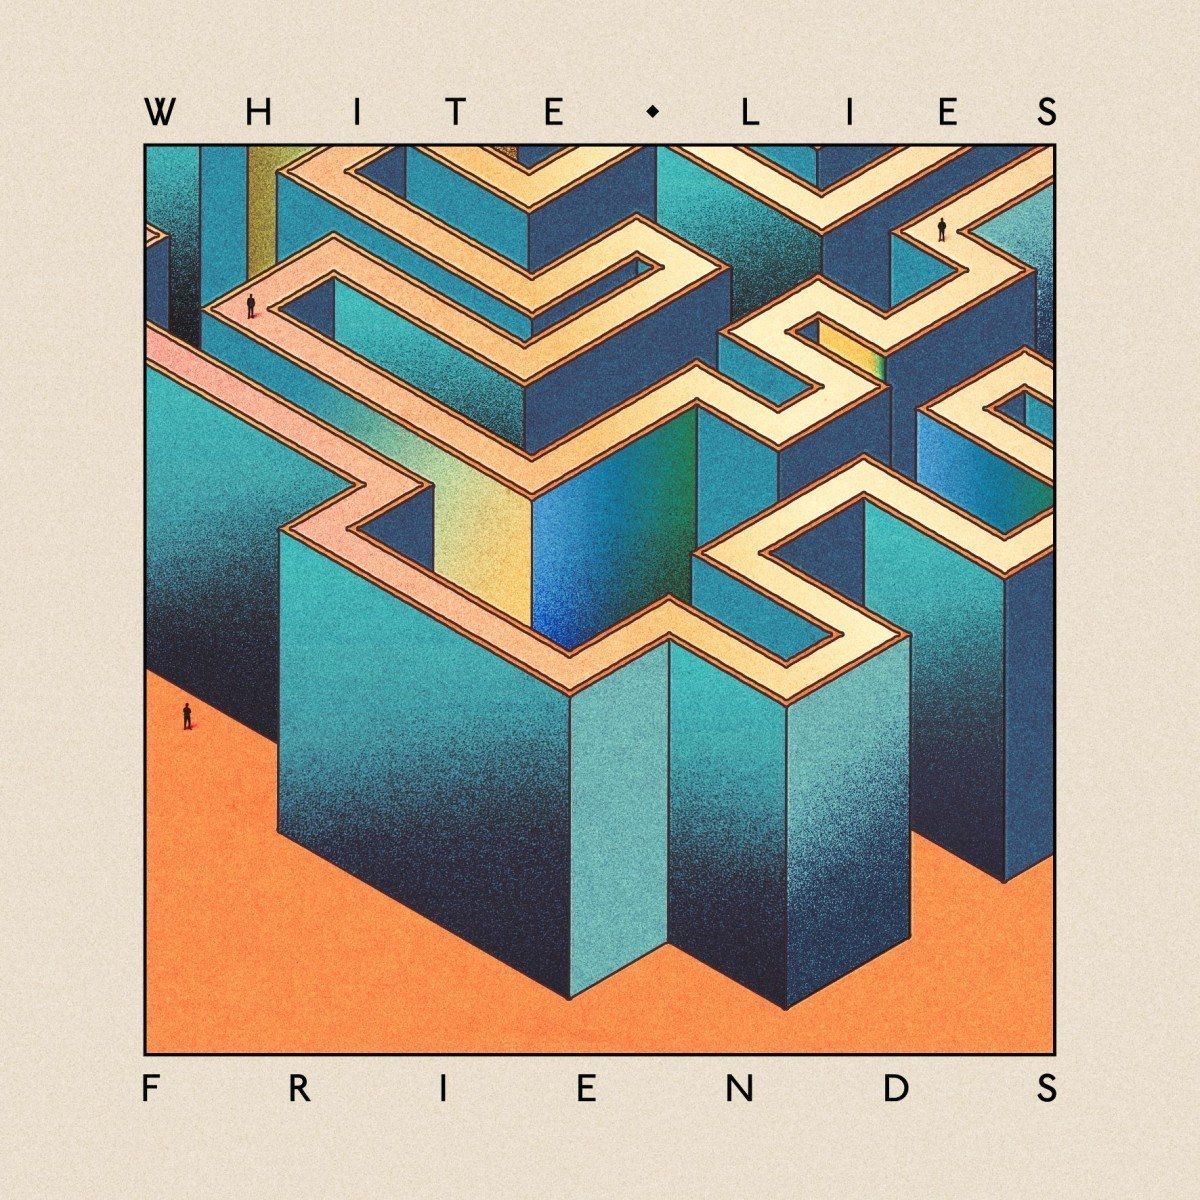 Imagem do álbum Friends do(a) artista White Lies